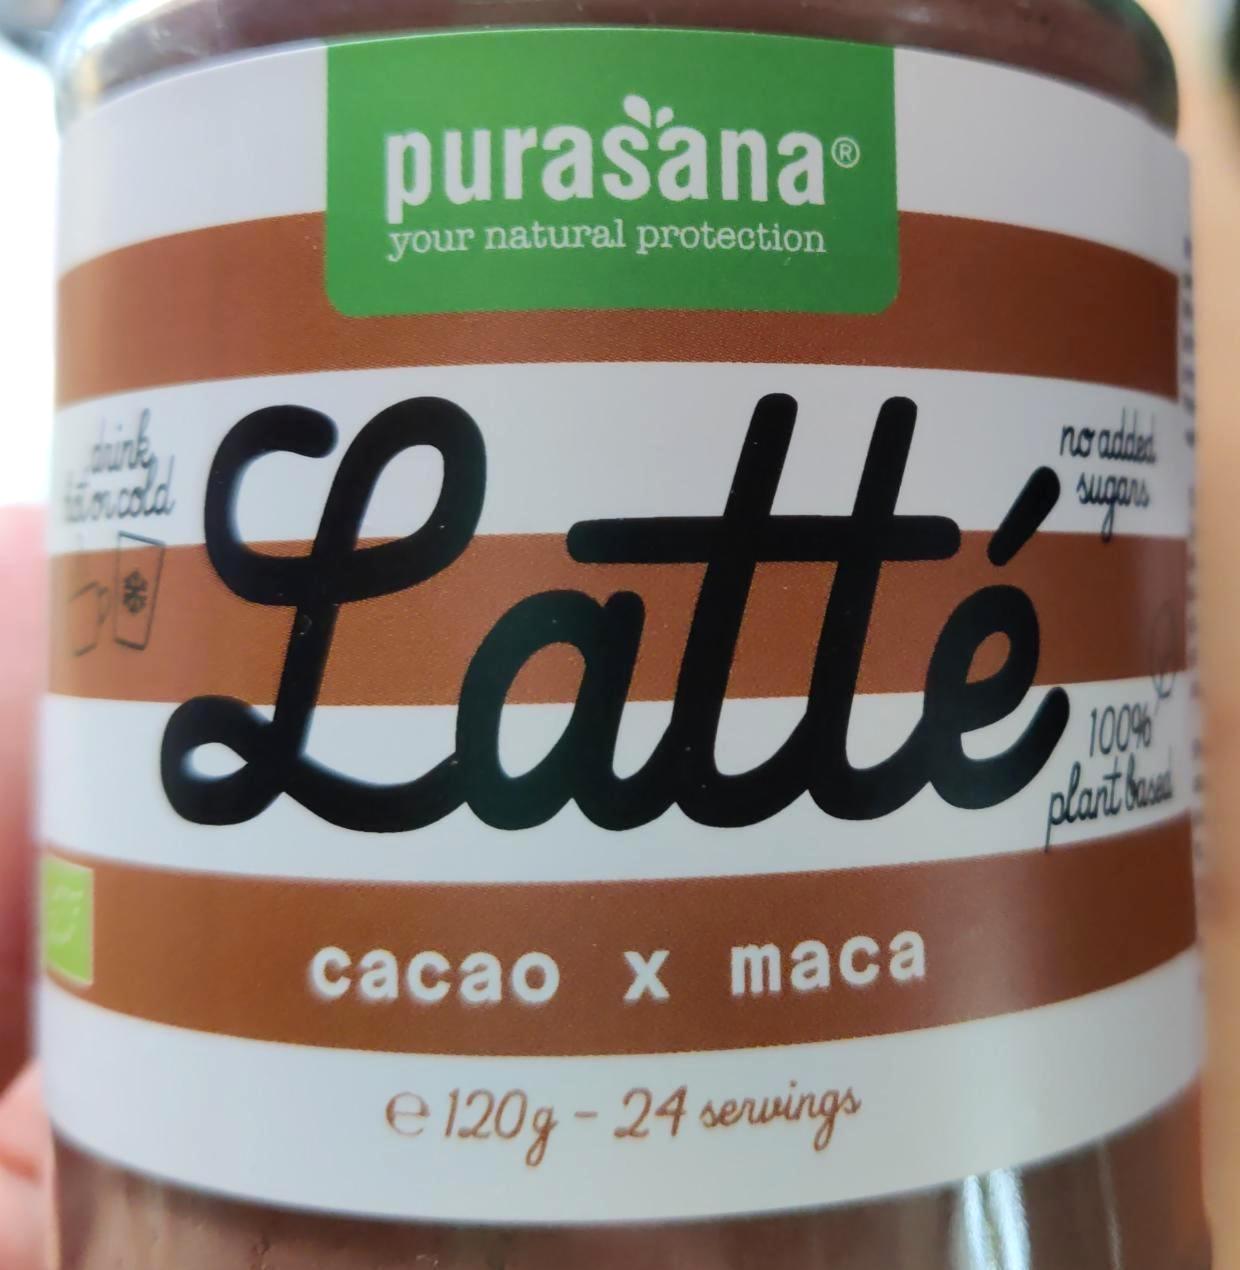 Képek - Latté Cacao x maca Purasana